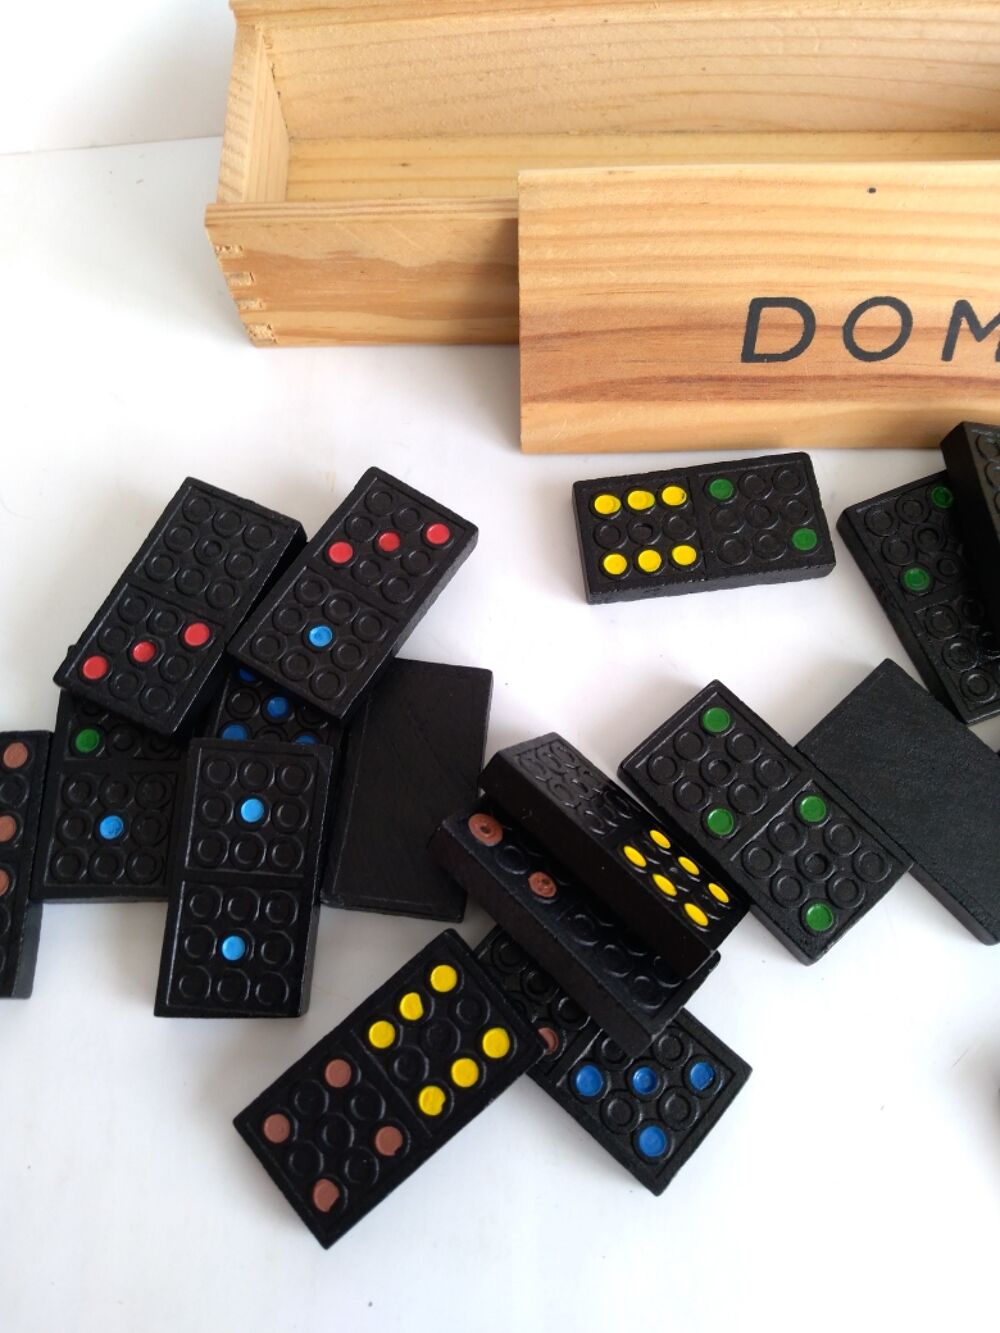 Domino Jeux / jouets